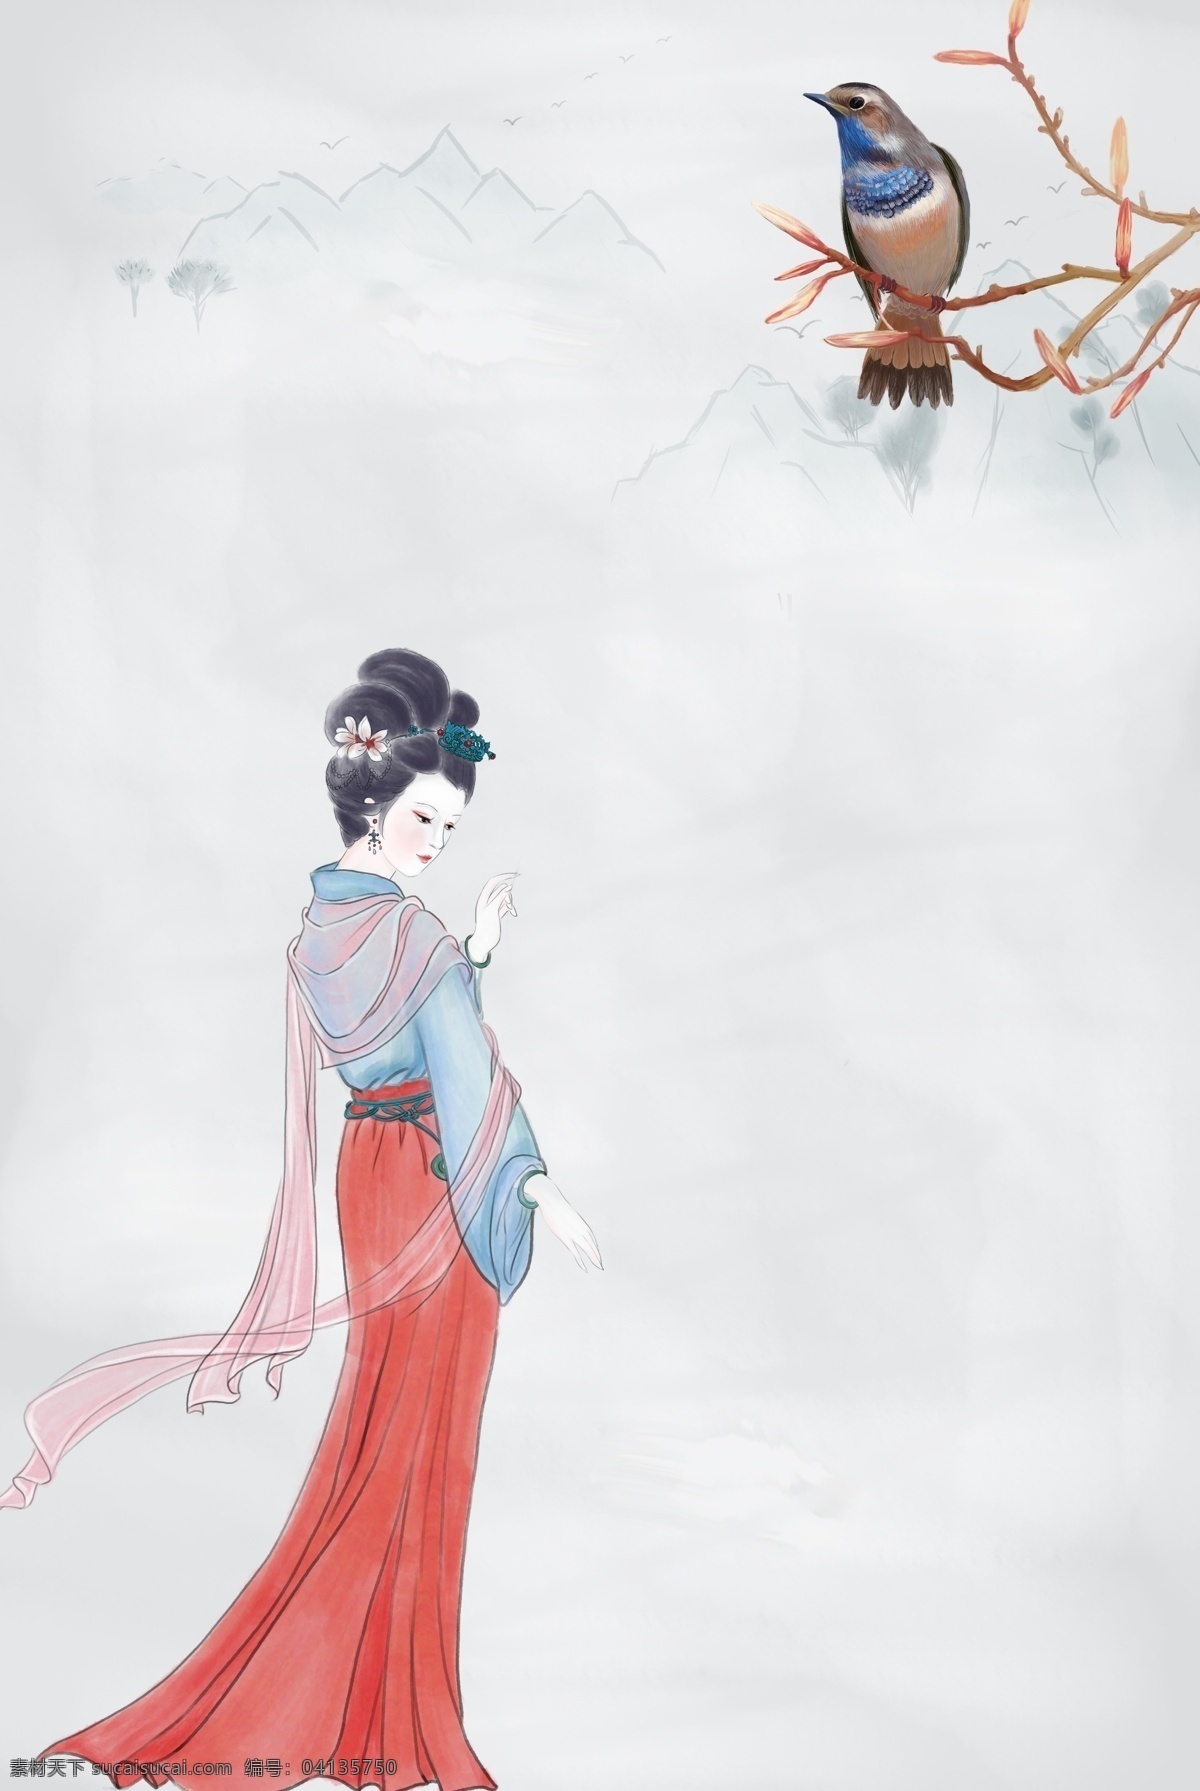 素雅 工笔画 仕女图 背景 古典 中国风 植物 花鸟 鸟 简约 复古 花卉 荷叶